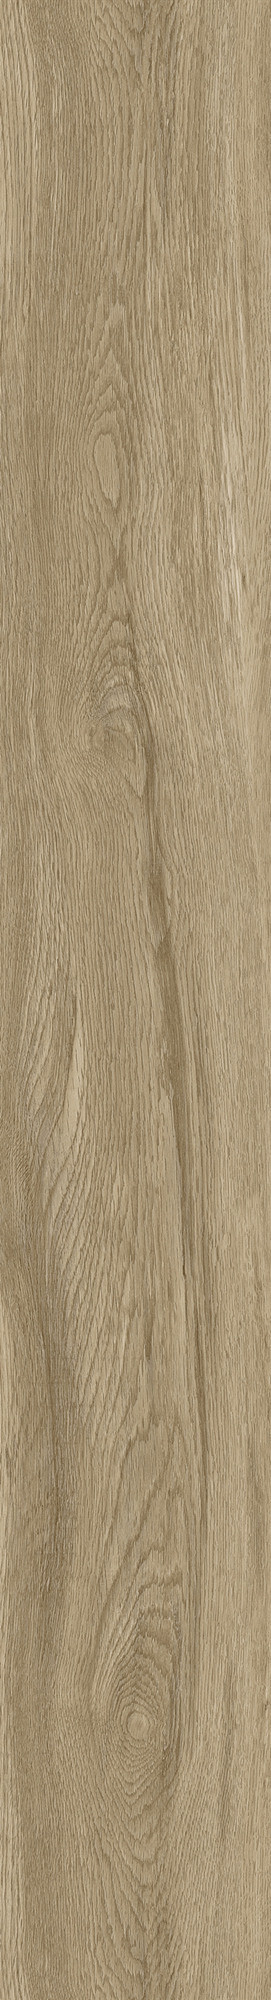 Hanflor Click Vinyl Plank Flooring Wood Look Vinyl Floor Designs Easy Install Kidproof Petproof 6''x36'' 4.0mm  20467